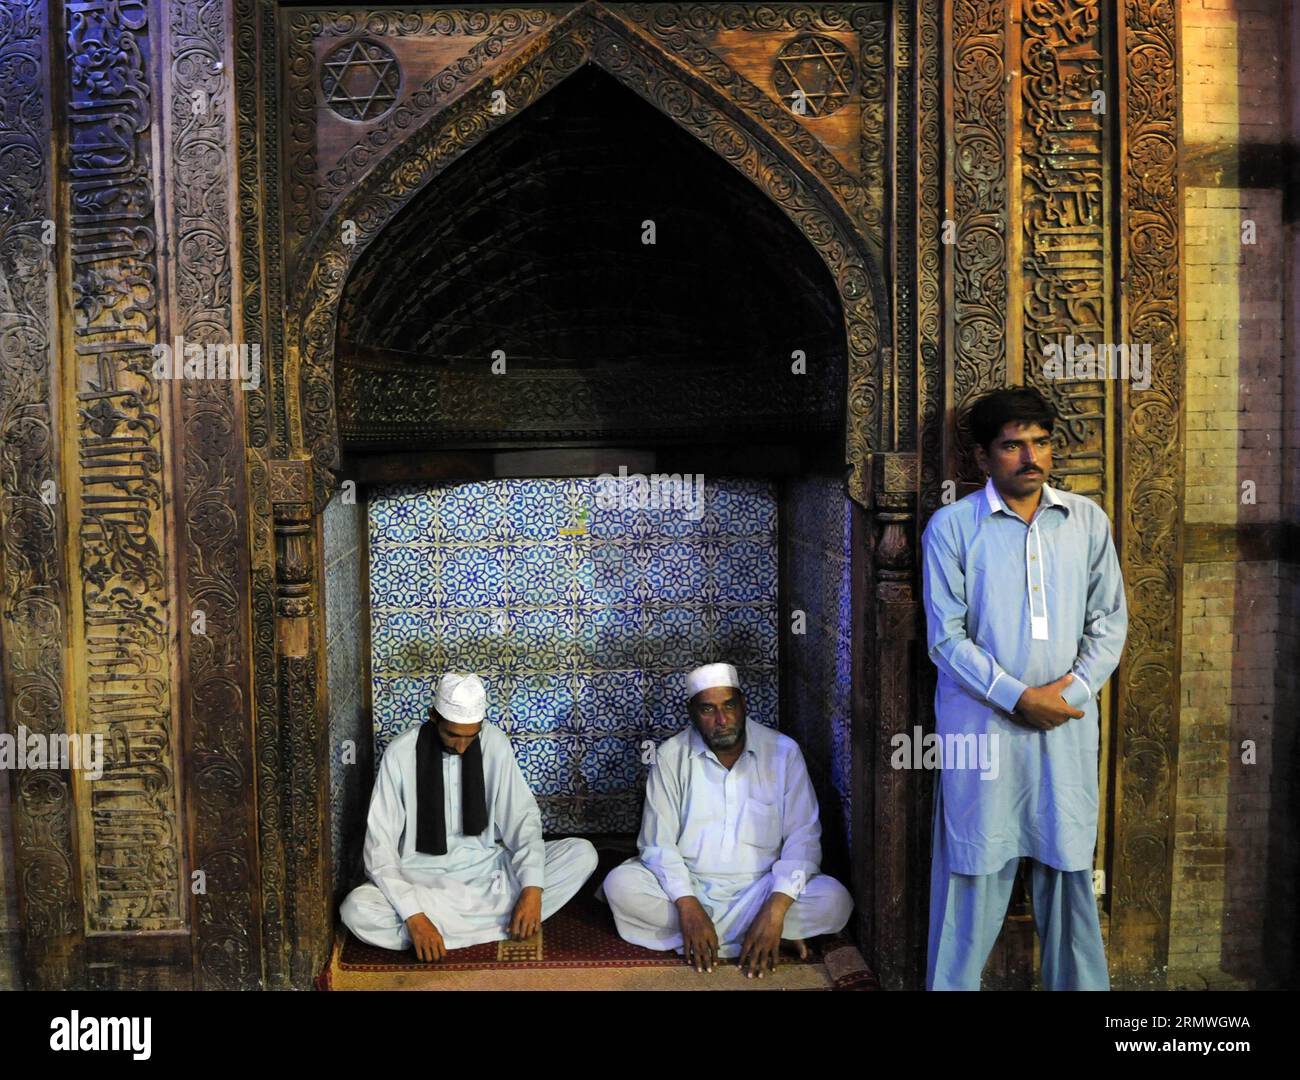 (141029) -- MULTAN, 29 ottobre 2014 -- i devoti musulmani pregano presso il santuario di santa Hazrat Bahauddin Zakaria, nel centro del Pakistan, Multan, il 29 ottobre 2014. Multan è la quinta città più grande del Pakistan per popolazione e ha un'area di 133 chilometri quadrati. Multan è conosciuta come la città dei Sufi o città dei Santi a causa del gran numero di santuari e santi sufi della città. La città è coperta di bazar, moschee, santuari e tombe ornate. PAKISTAN-MULTAN-SANTUARIO AhmadxKamal PUBLICATIONxNOTxINxCHN Multan OCT 29 2014 devoti musulmani pregano PRESSO il Santuario di Sufi Saint Hazrat Bahauddin Z Foto Stock